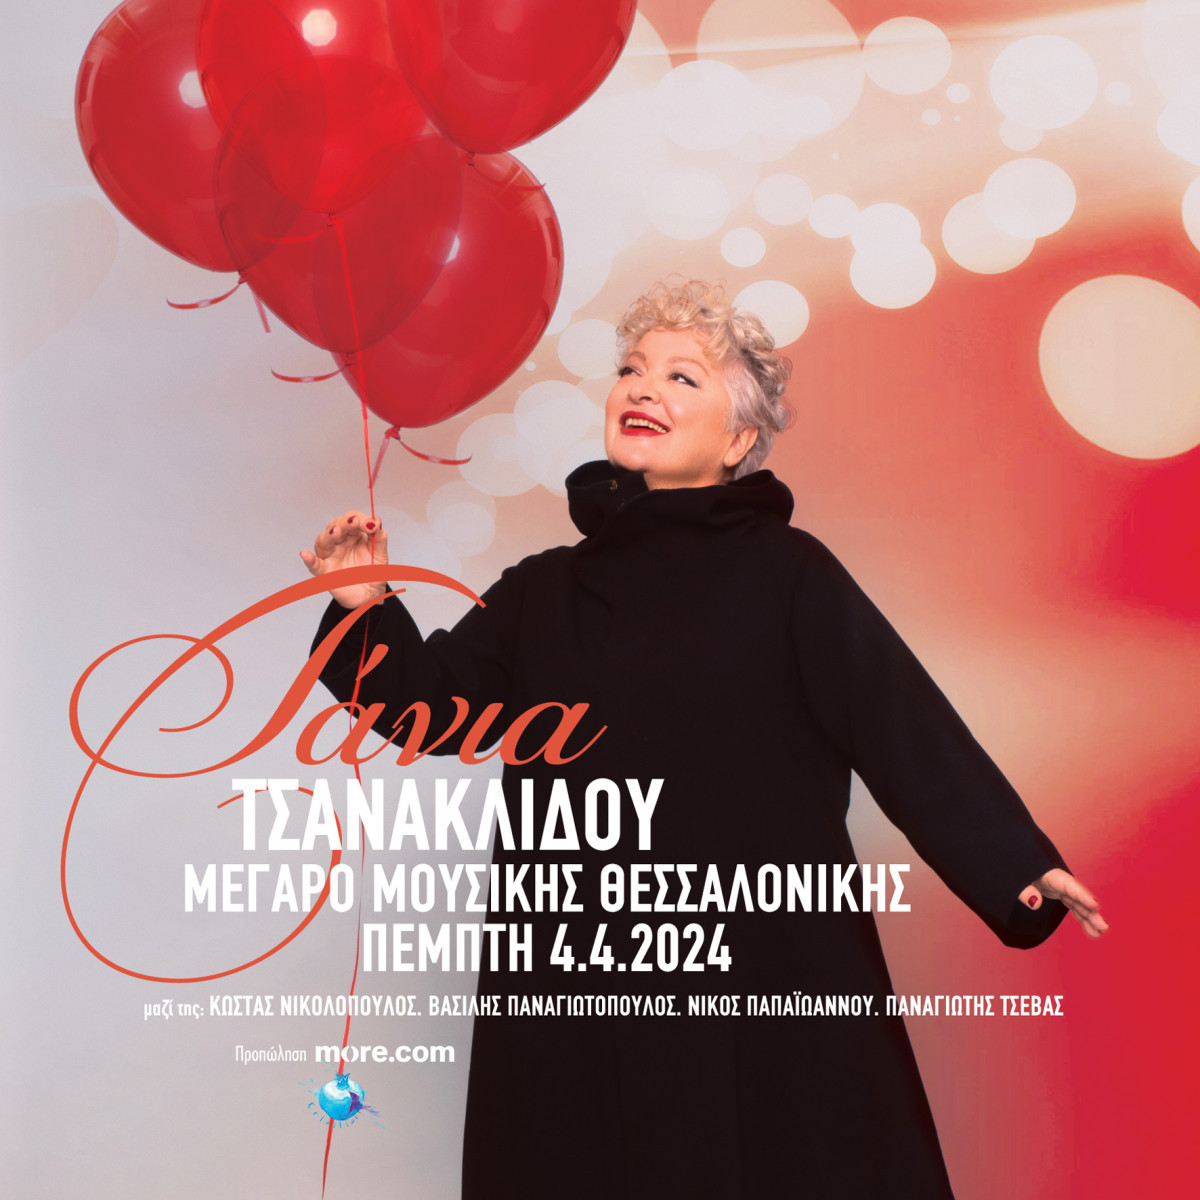 Τάνια Τσανακλίδου / Στο Μέγαρο Μουσικής Θεσσαλονίκης – Συγκίνηση για μυημένους και μη